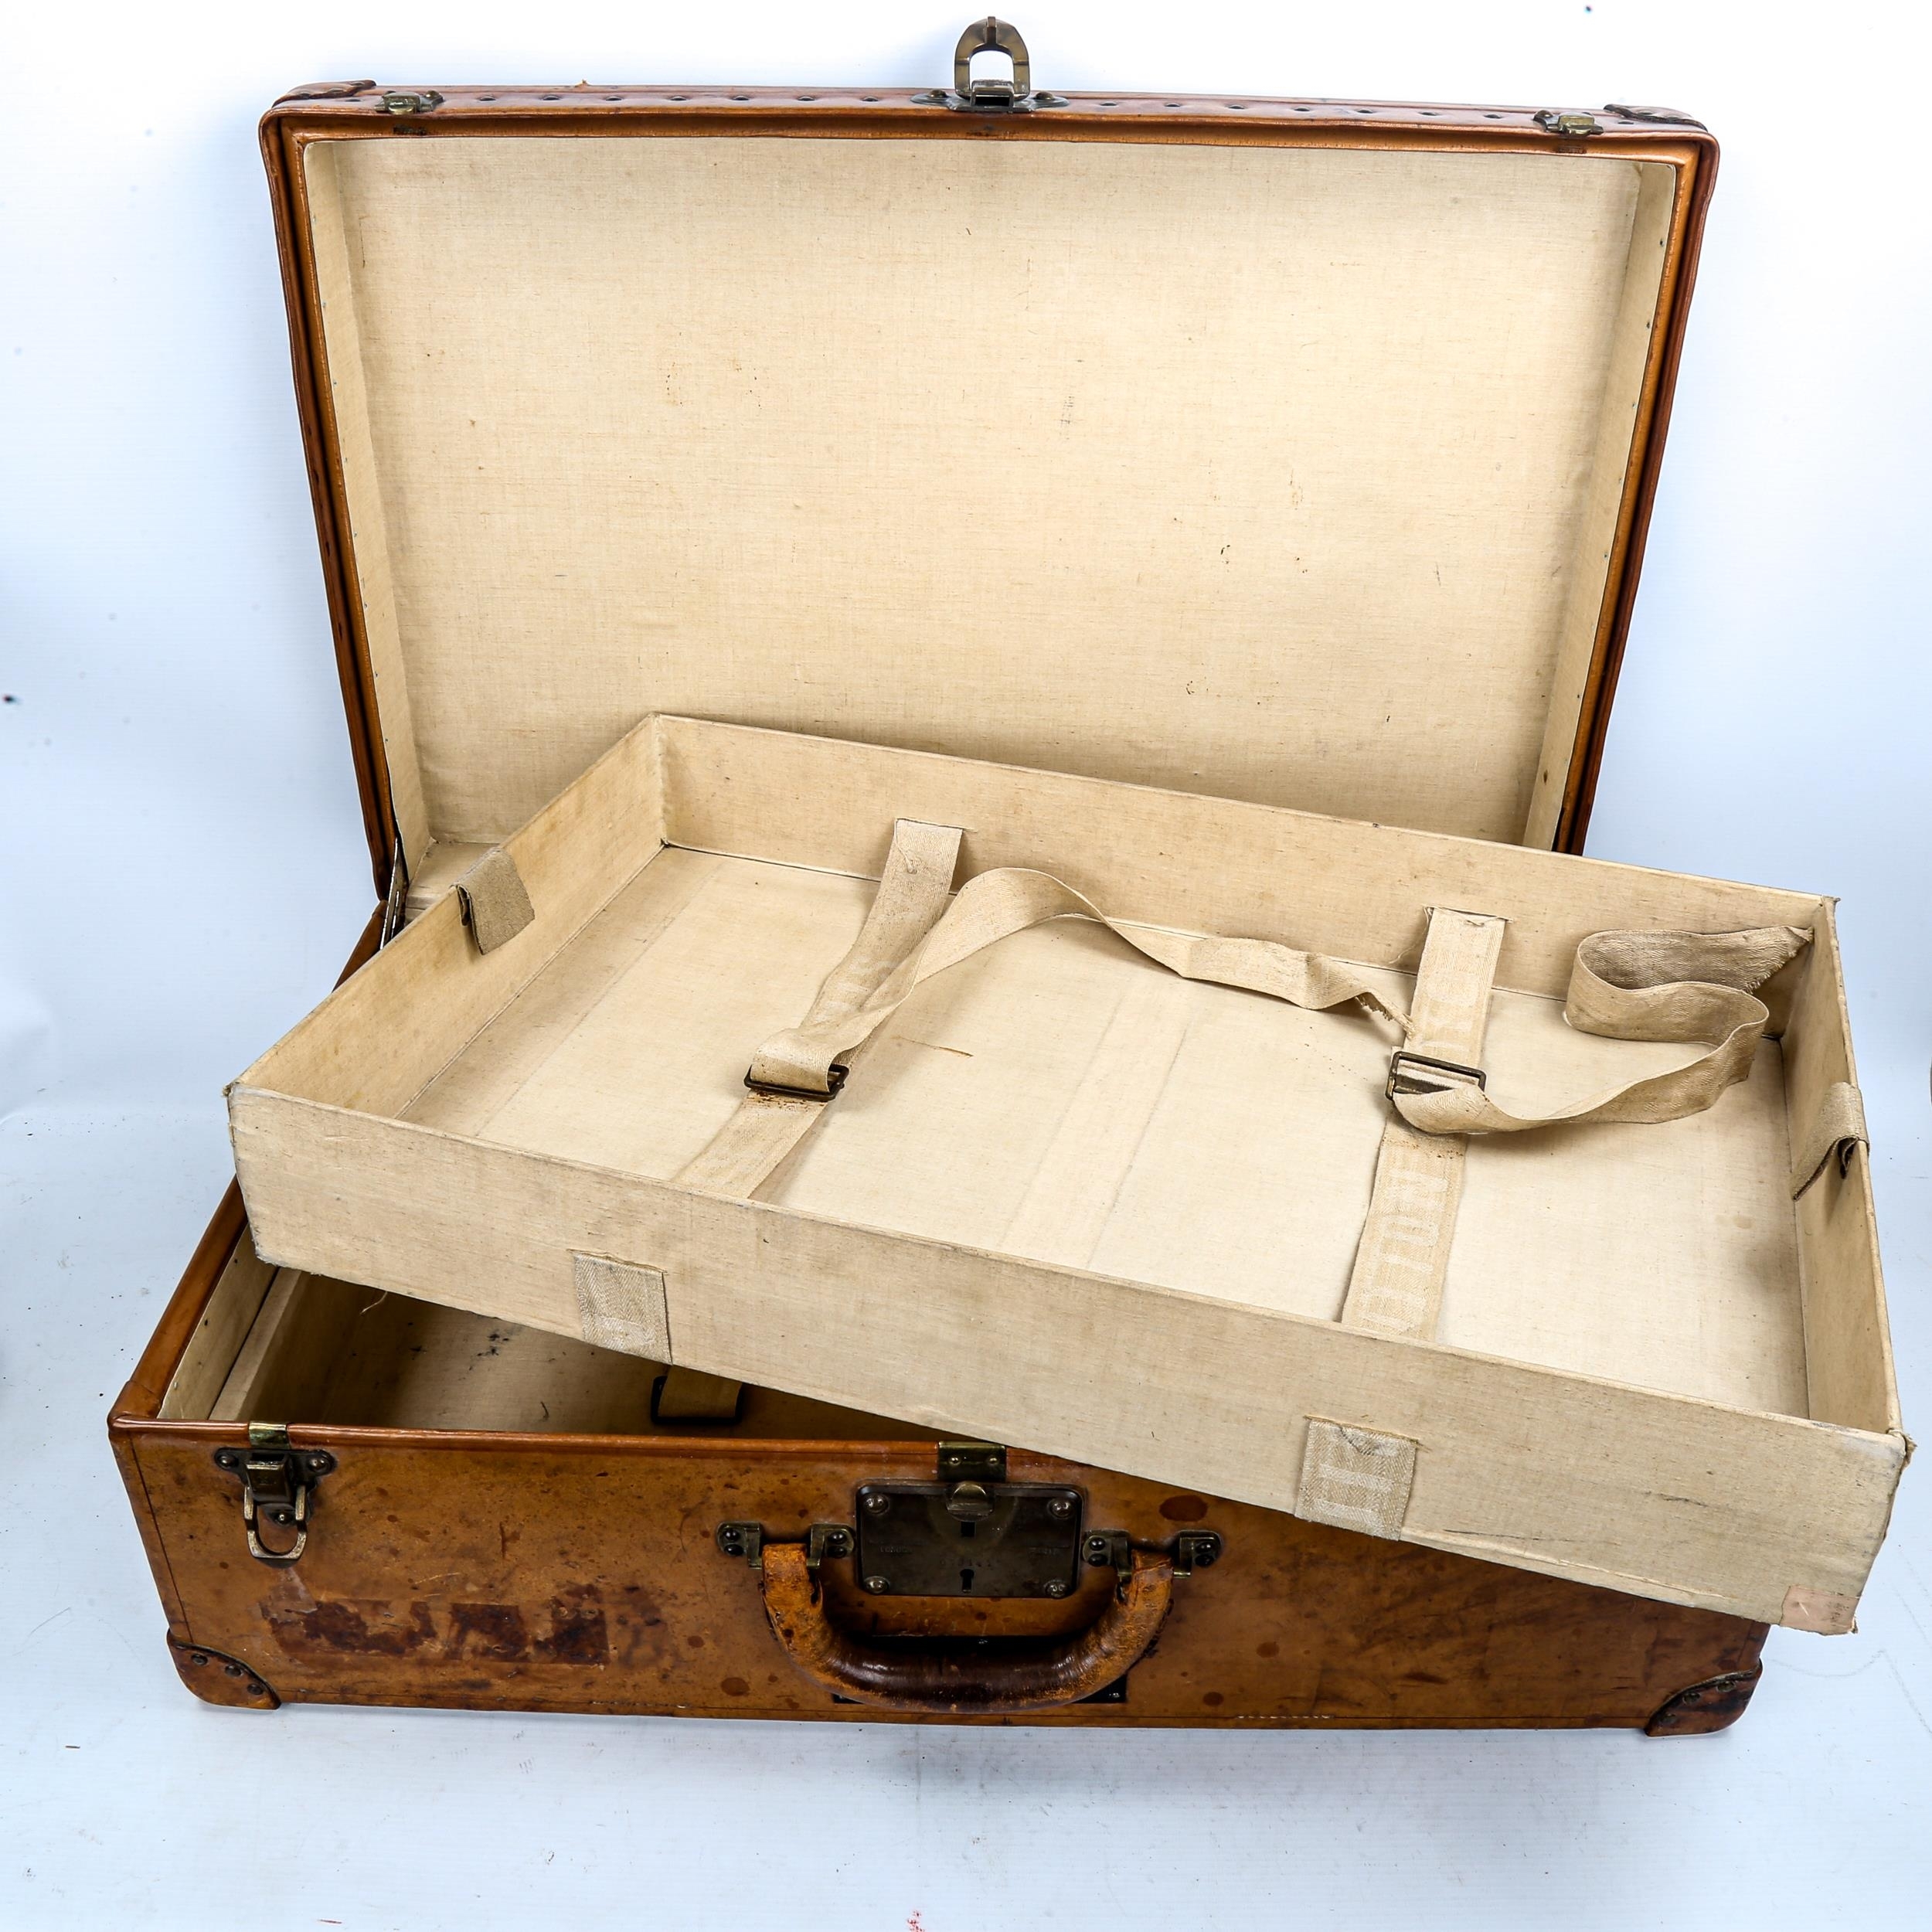 Sold at Auction: Louis VUITTON. Koffer, Valise, Vintage, LOUIS VUITTON  TRAVELING CASE, 53 x 79 x 24 cm